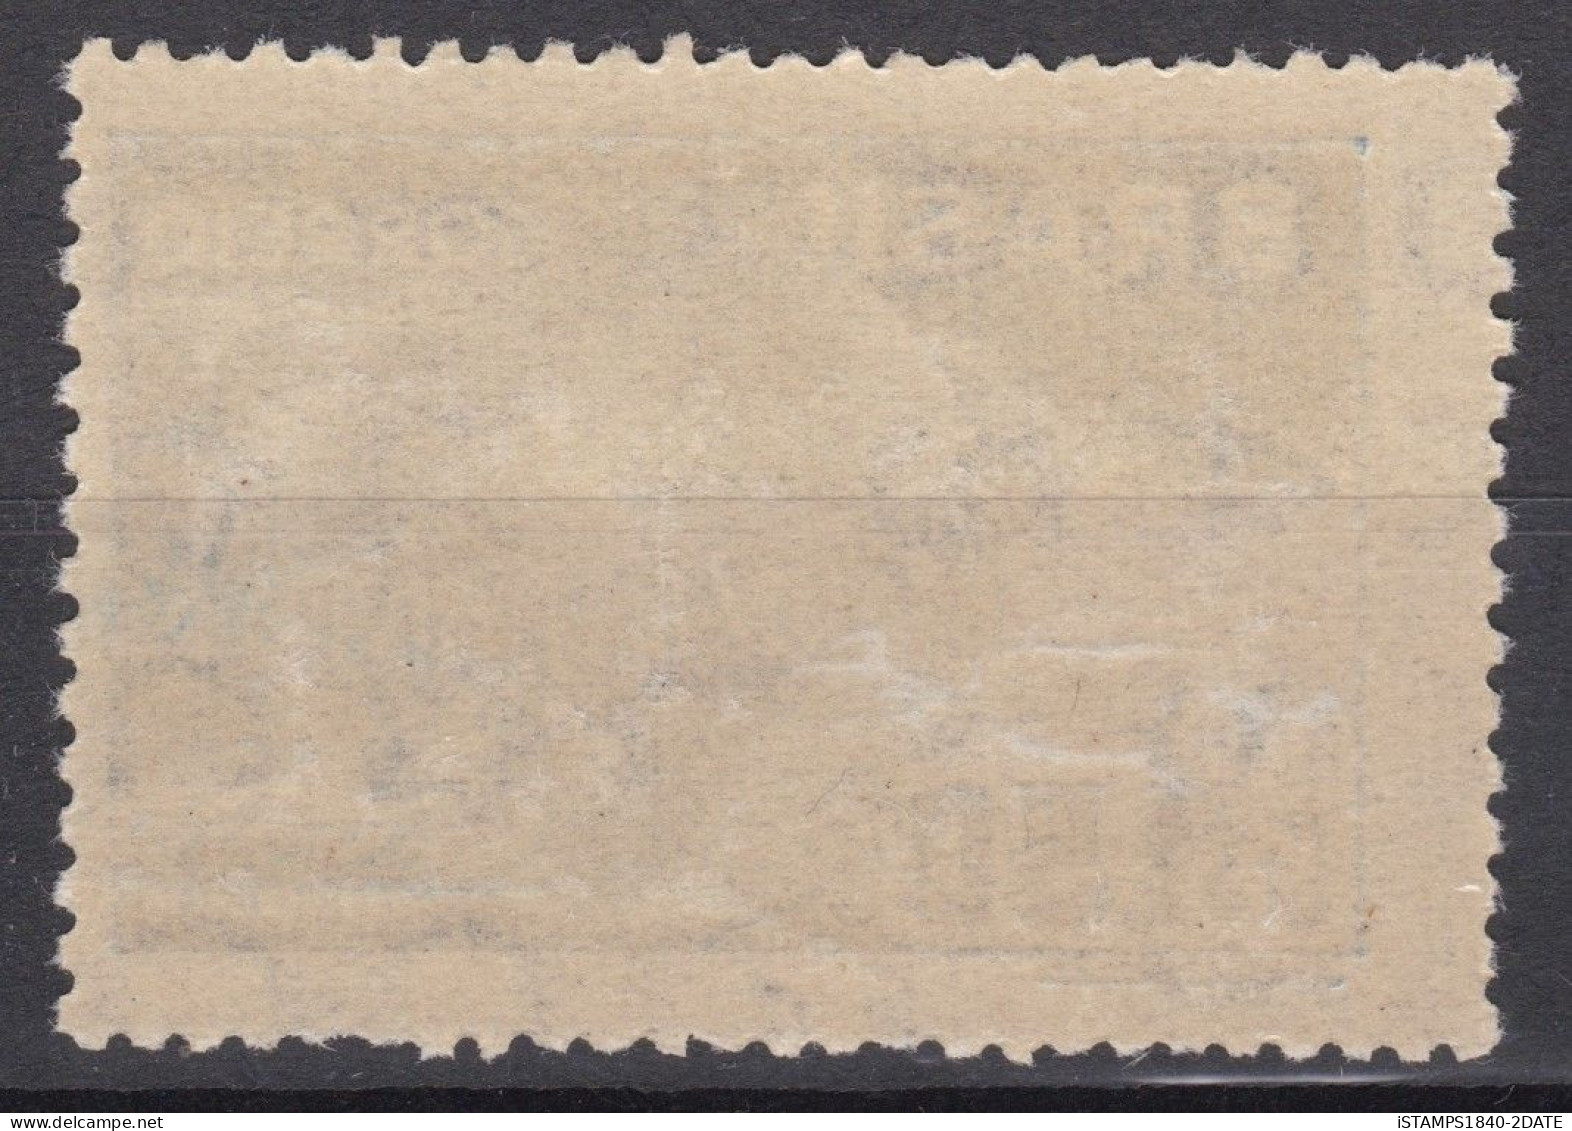 001110/ Brazil 1949 U.P.U MNH - Nuovi